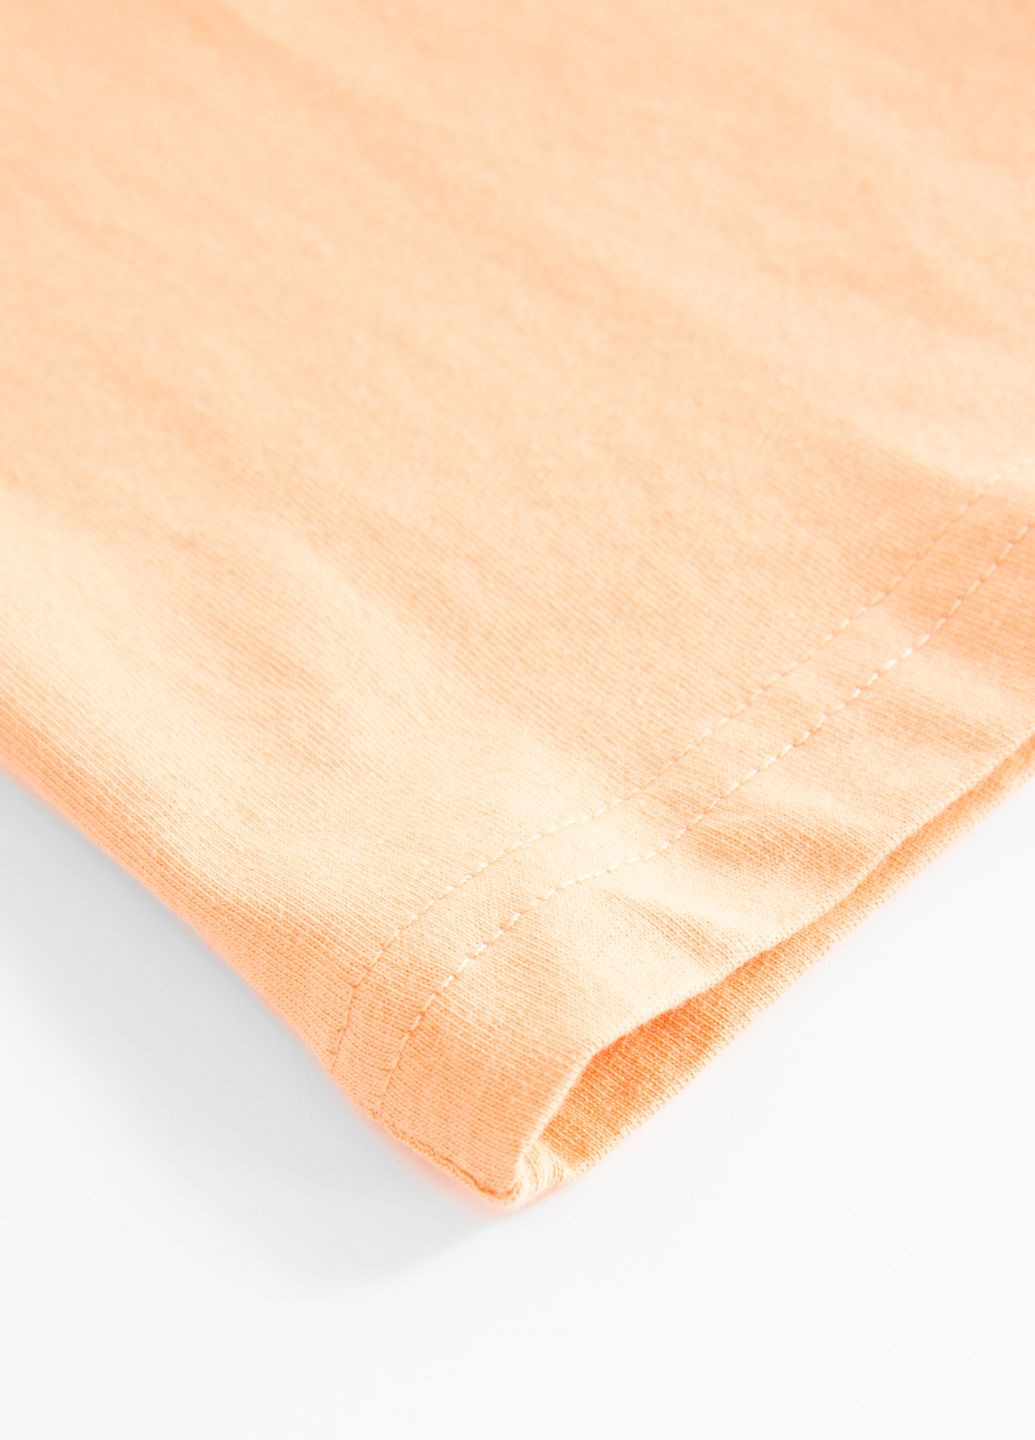 Оранжевая демисезонная футболка Coccodrillo